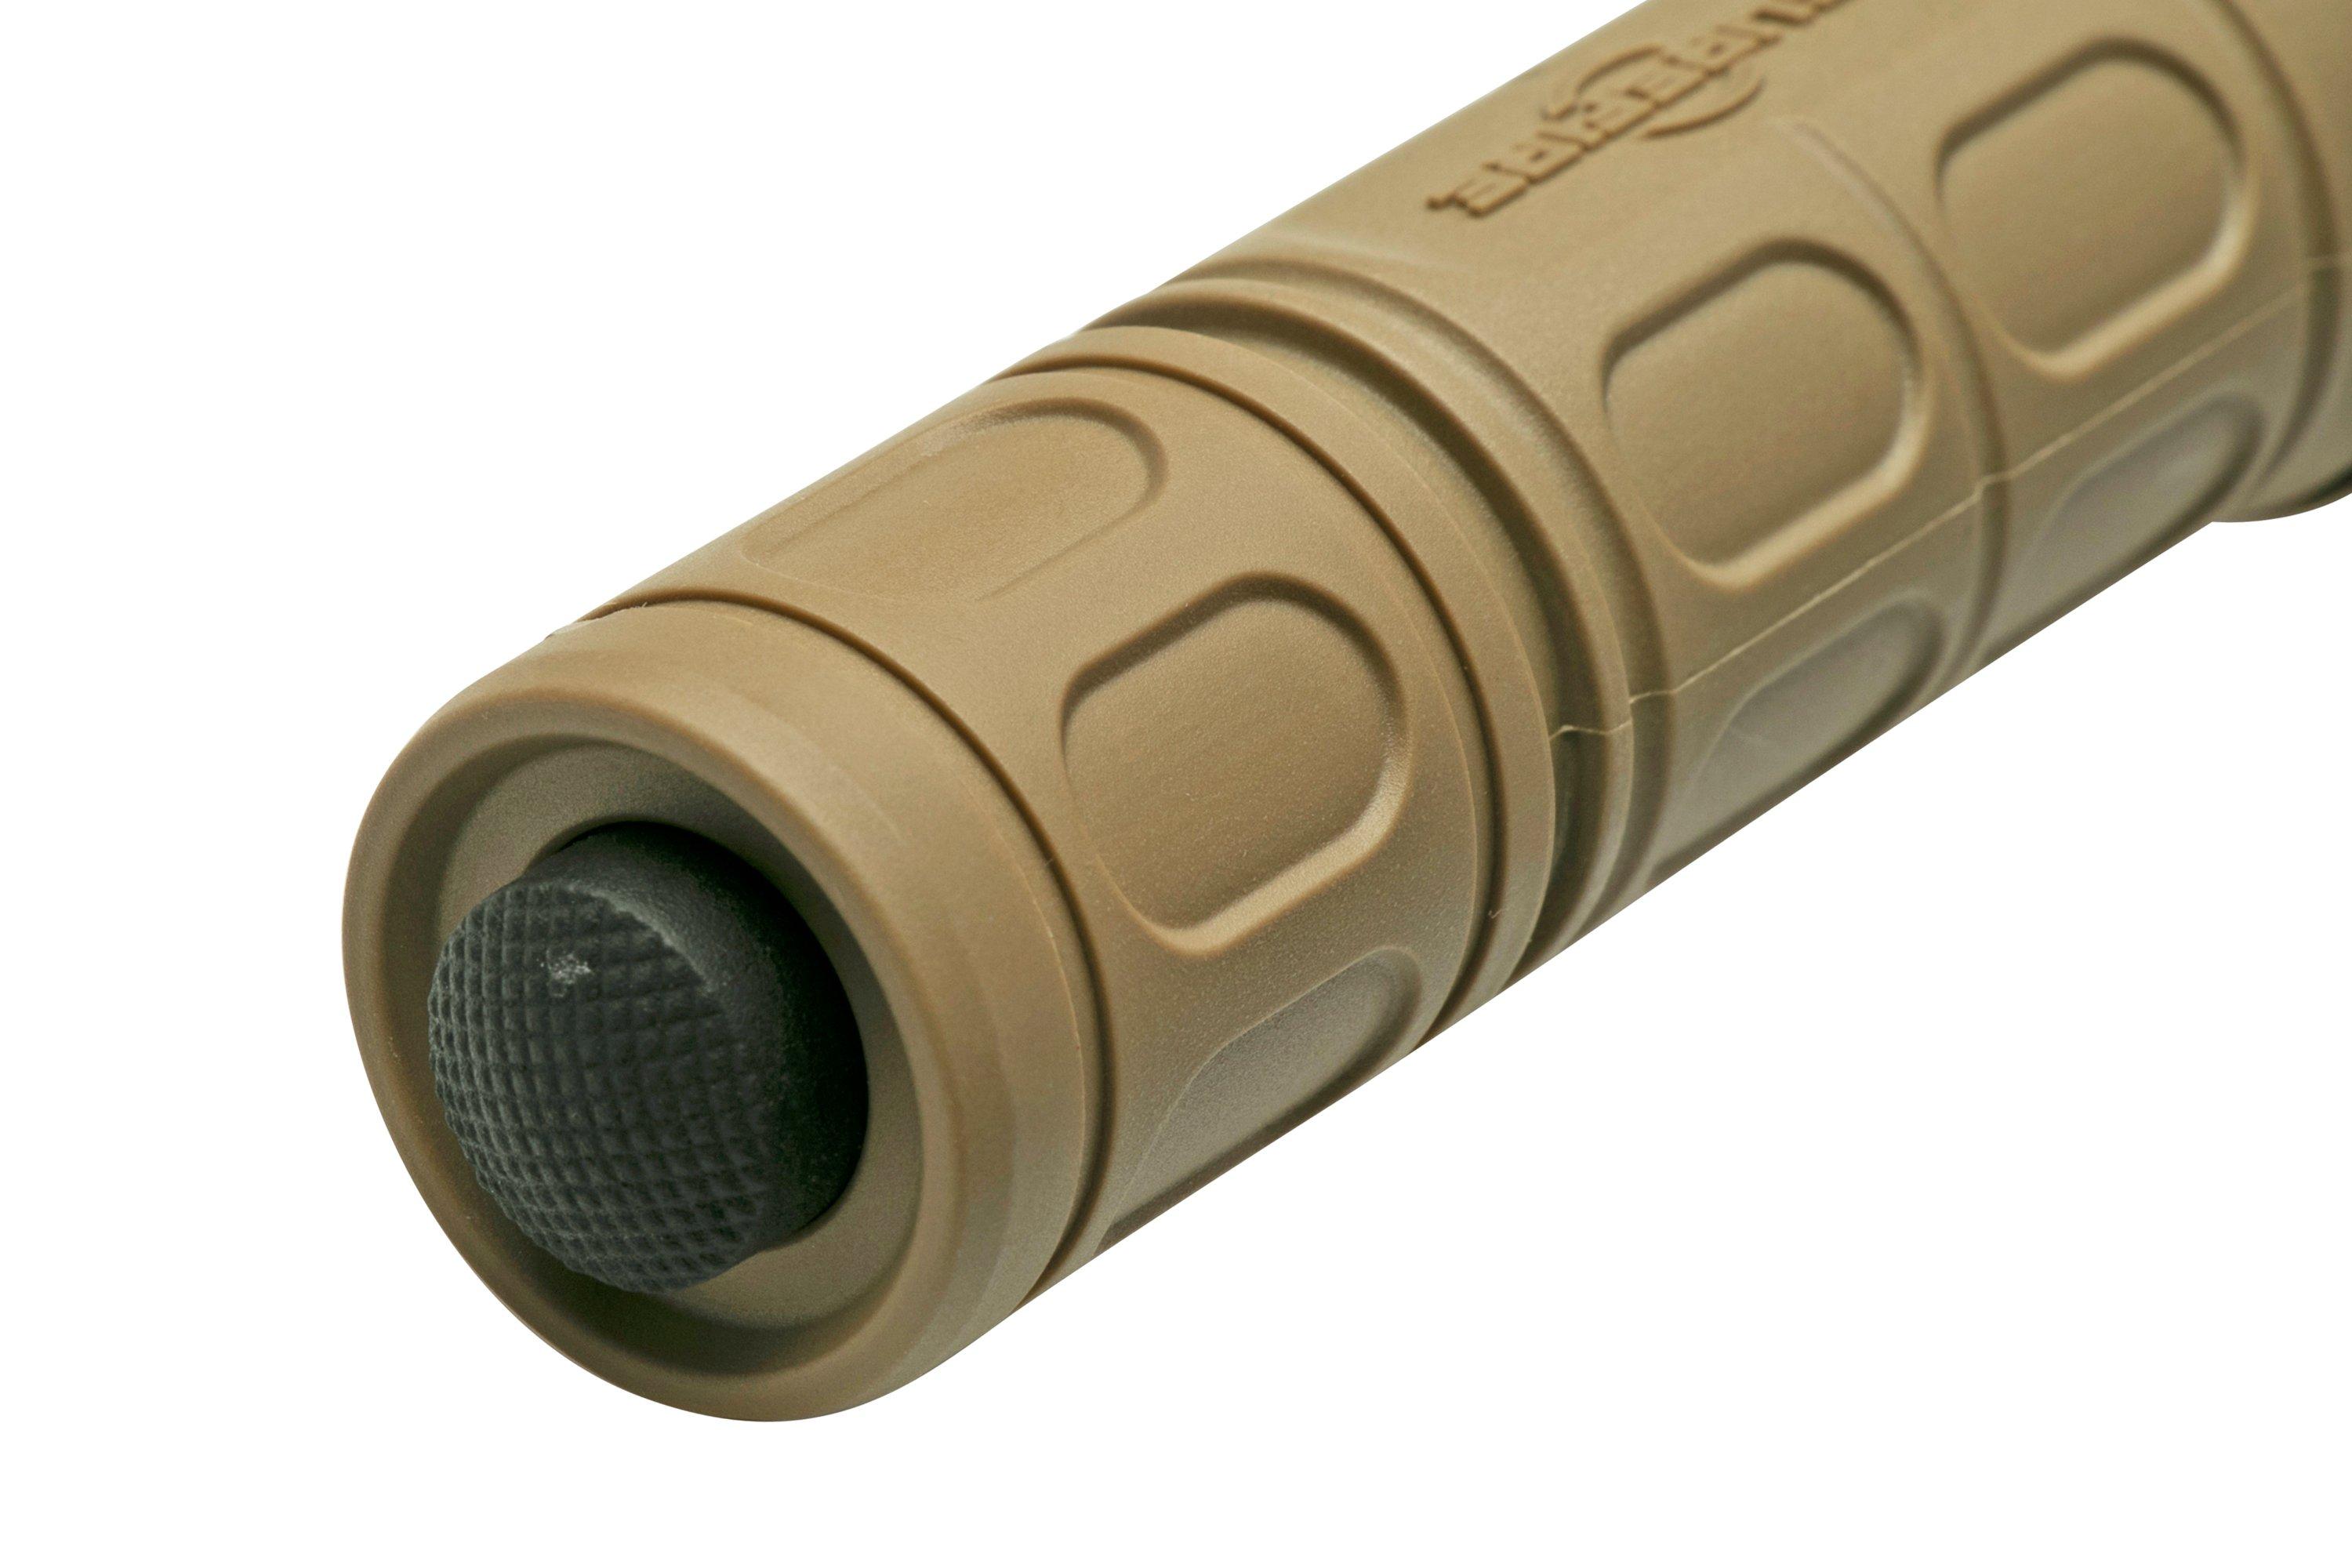 SureFire G2X Pro, sand colour, 600 lumen, tactical flashlight